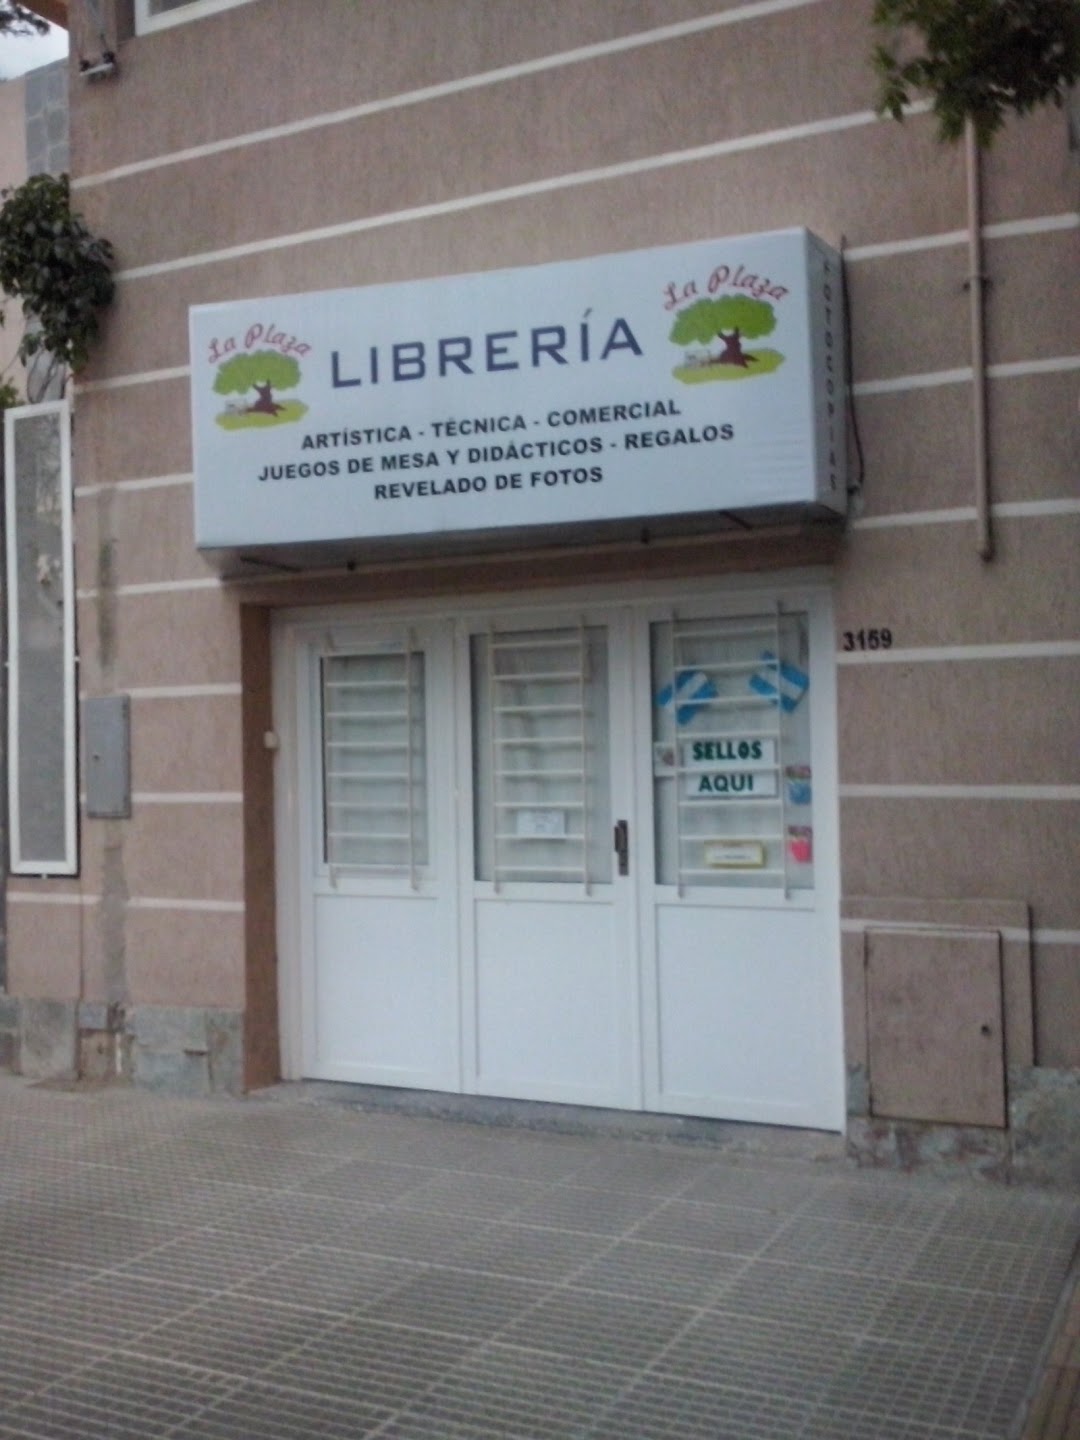 Libreria La Plaza